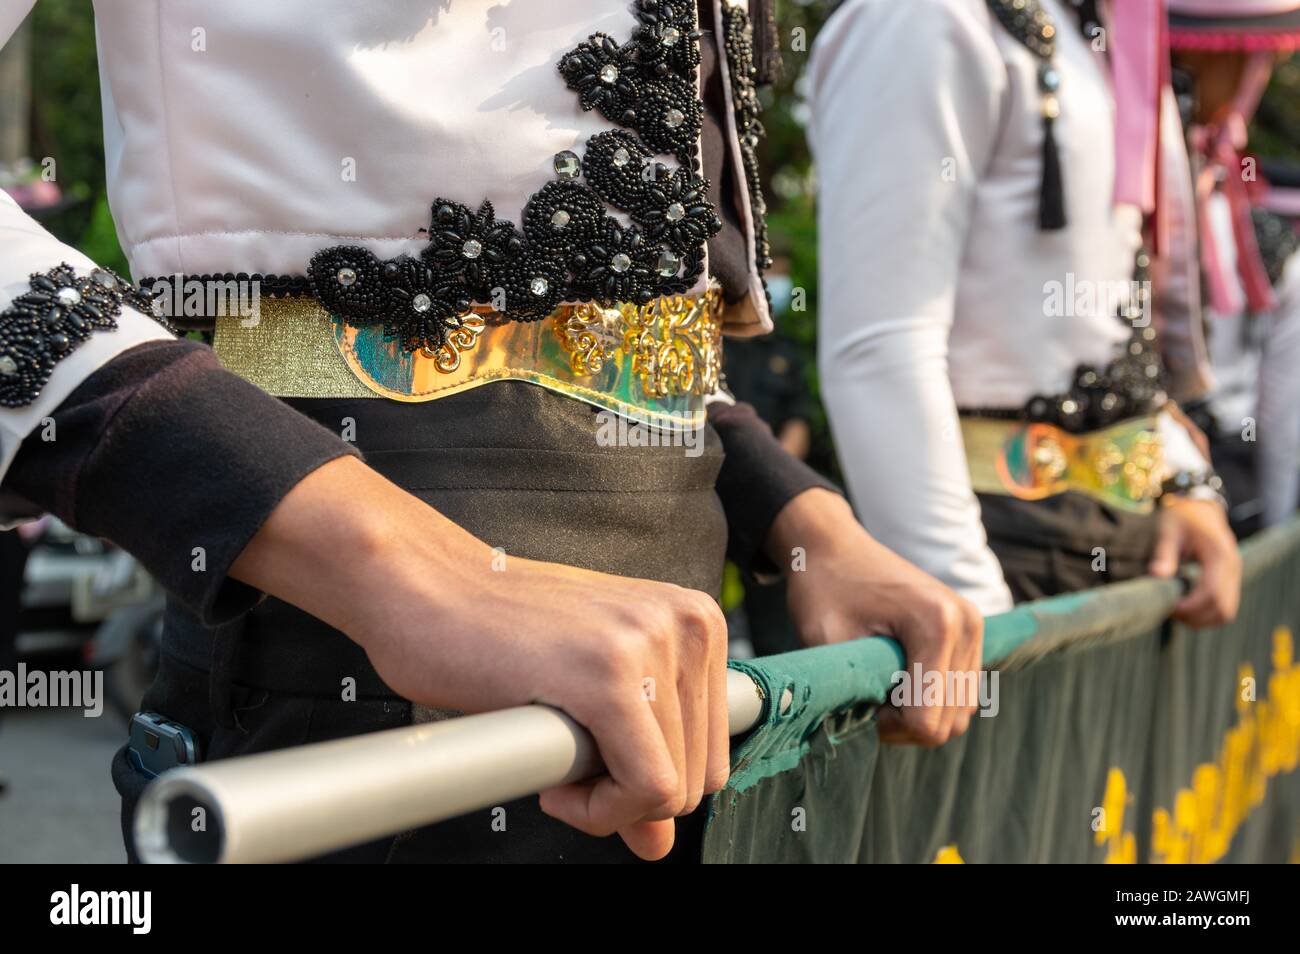 Bild der traditionellen Herrenbekleidung für thailändische Hände, die Bambusstange halten - ausgewählter Fokus Stockfoto